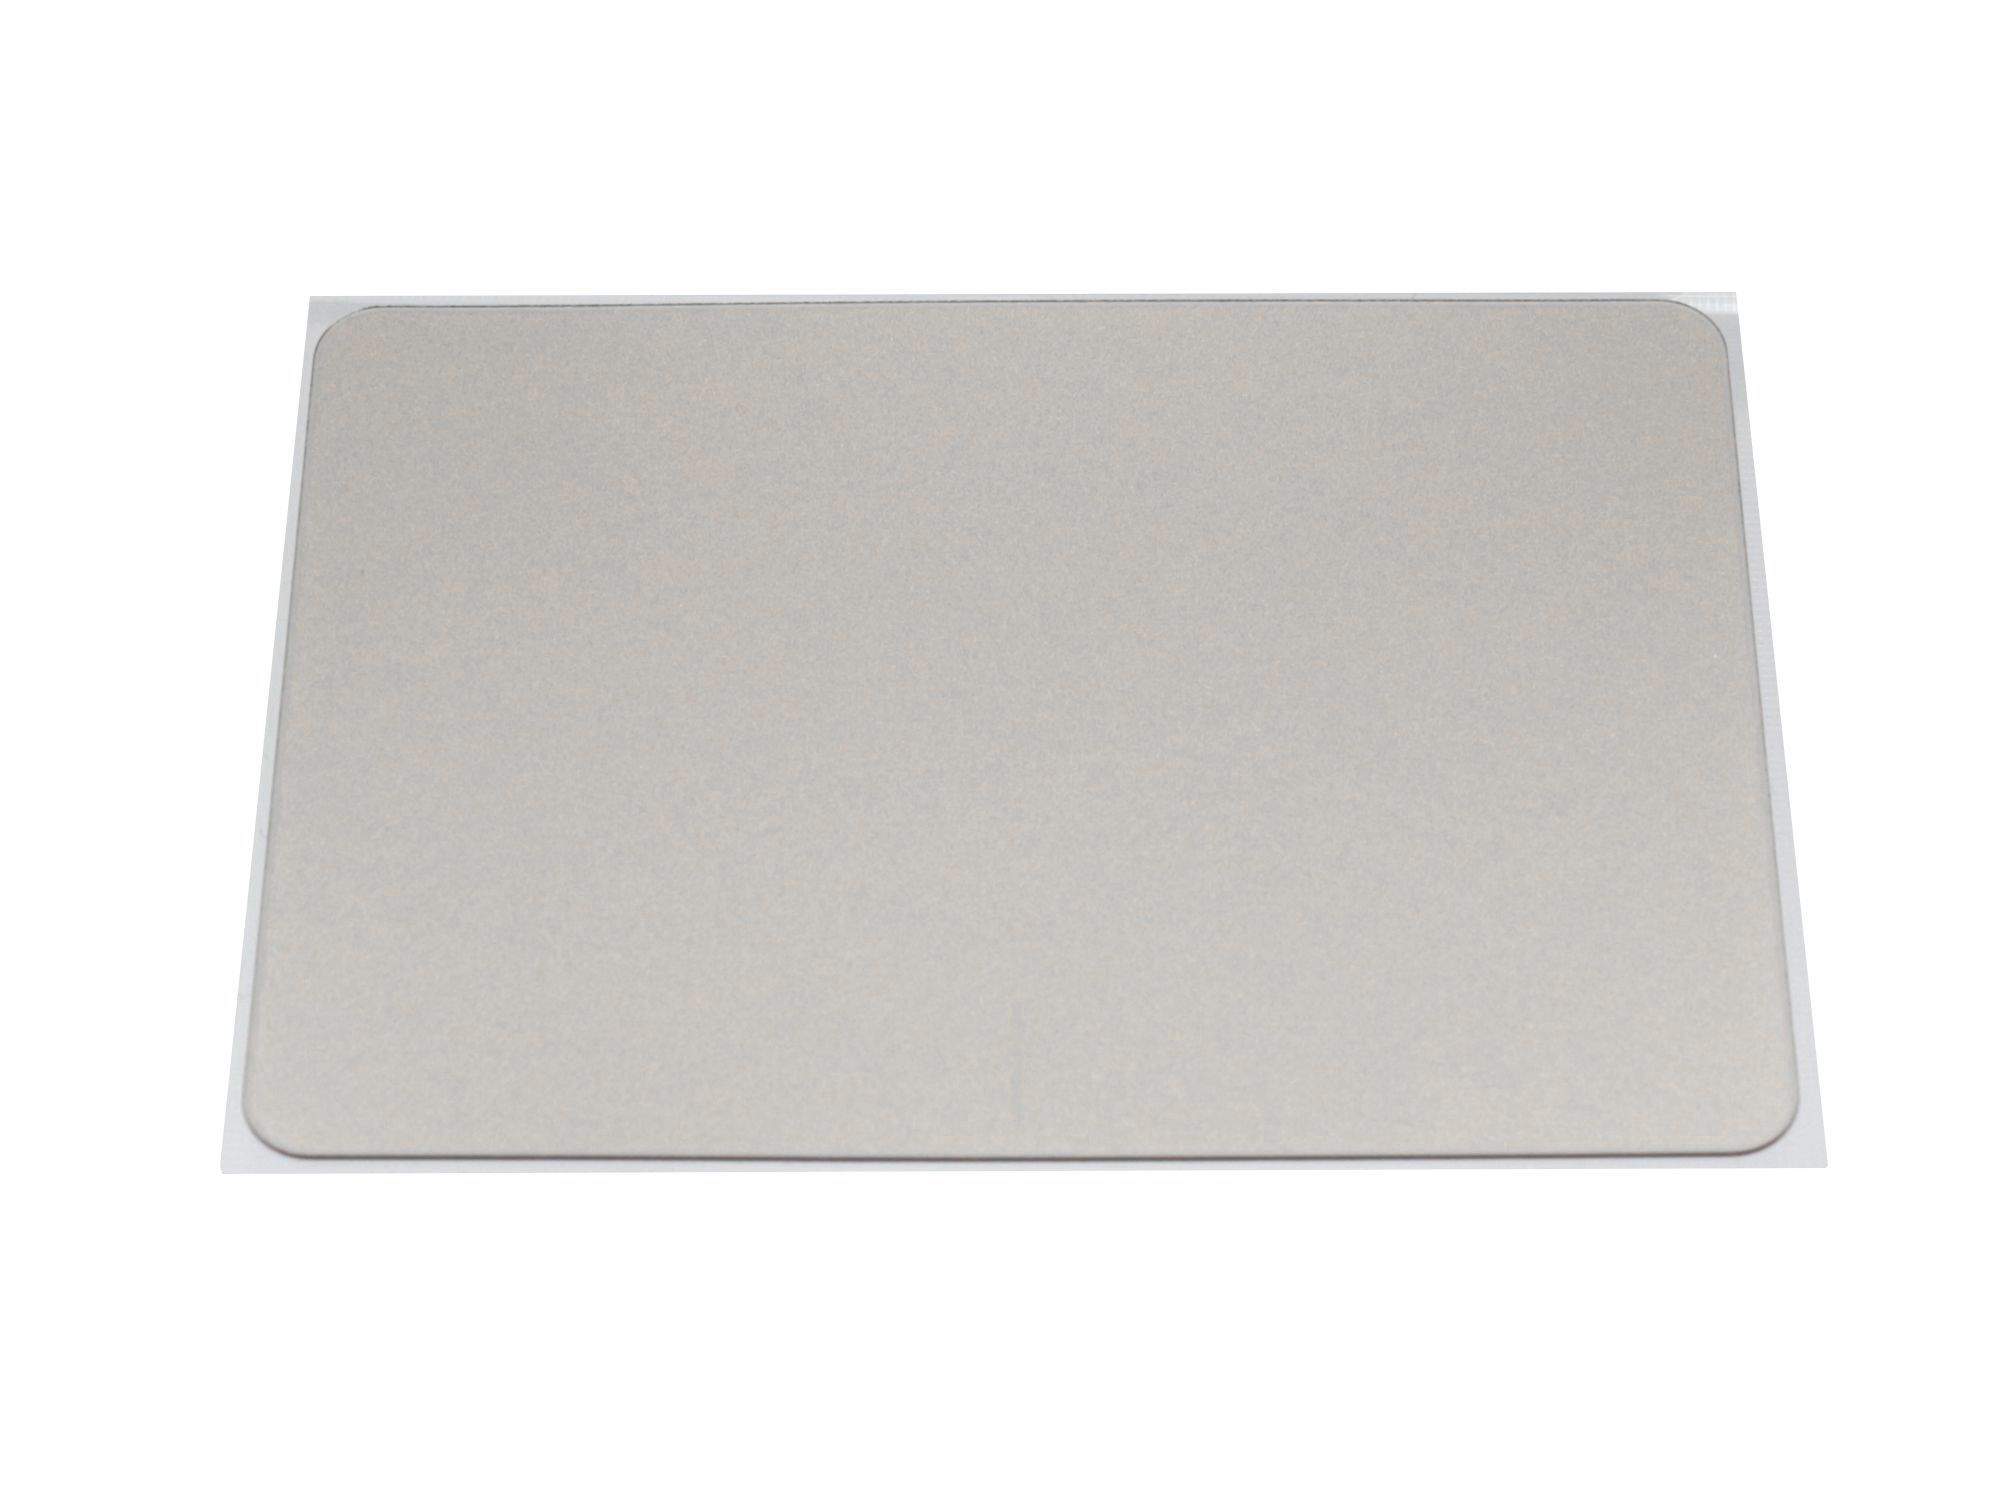 ASUS Touchpad Abdeckung silber Original für Asus F556UA Serie